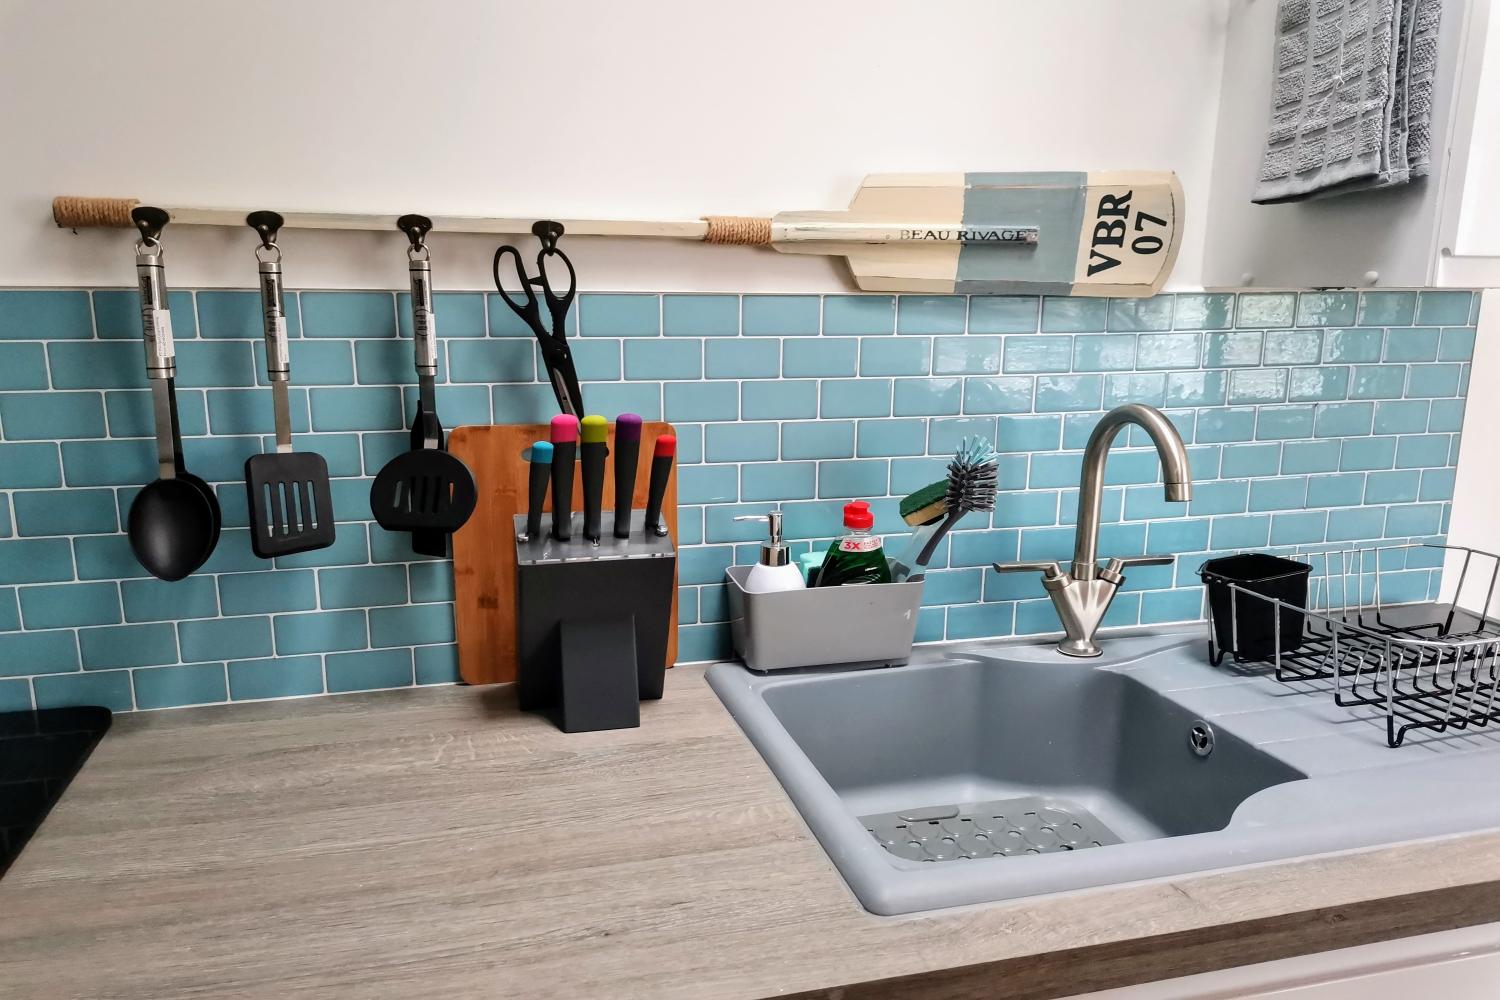 Kitchenette work area sink drainer